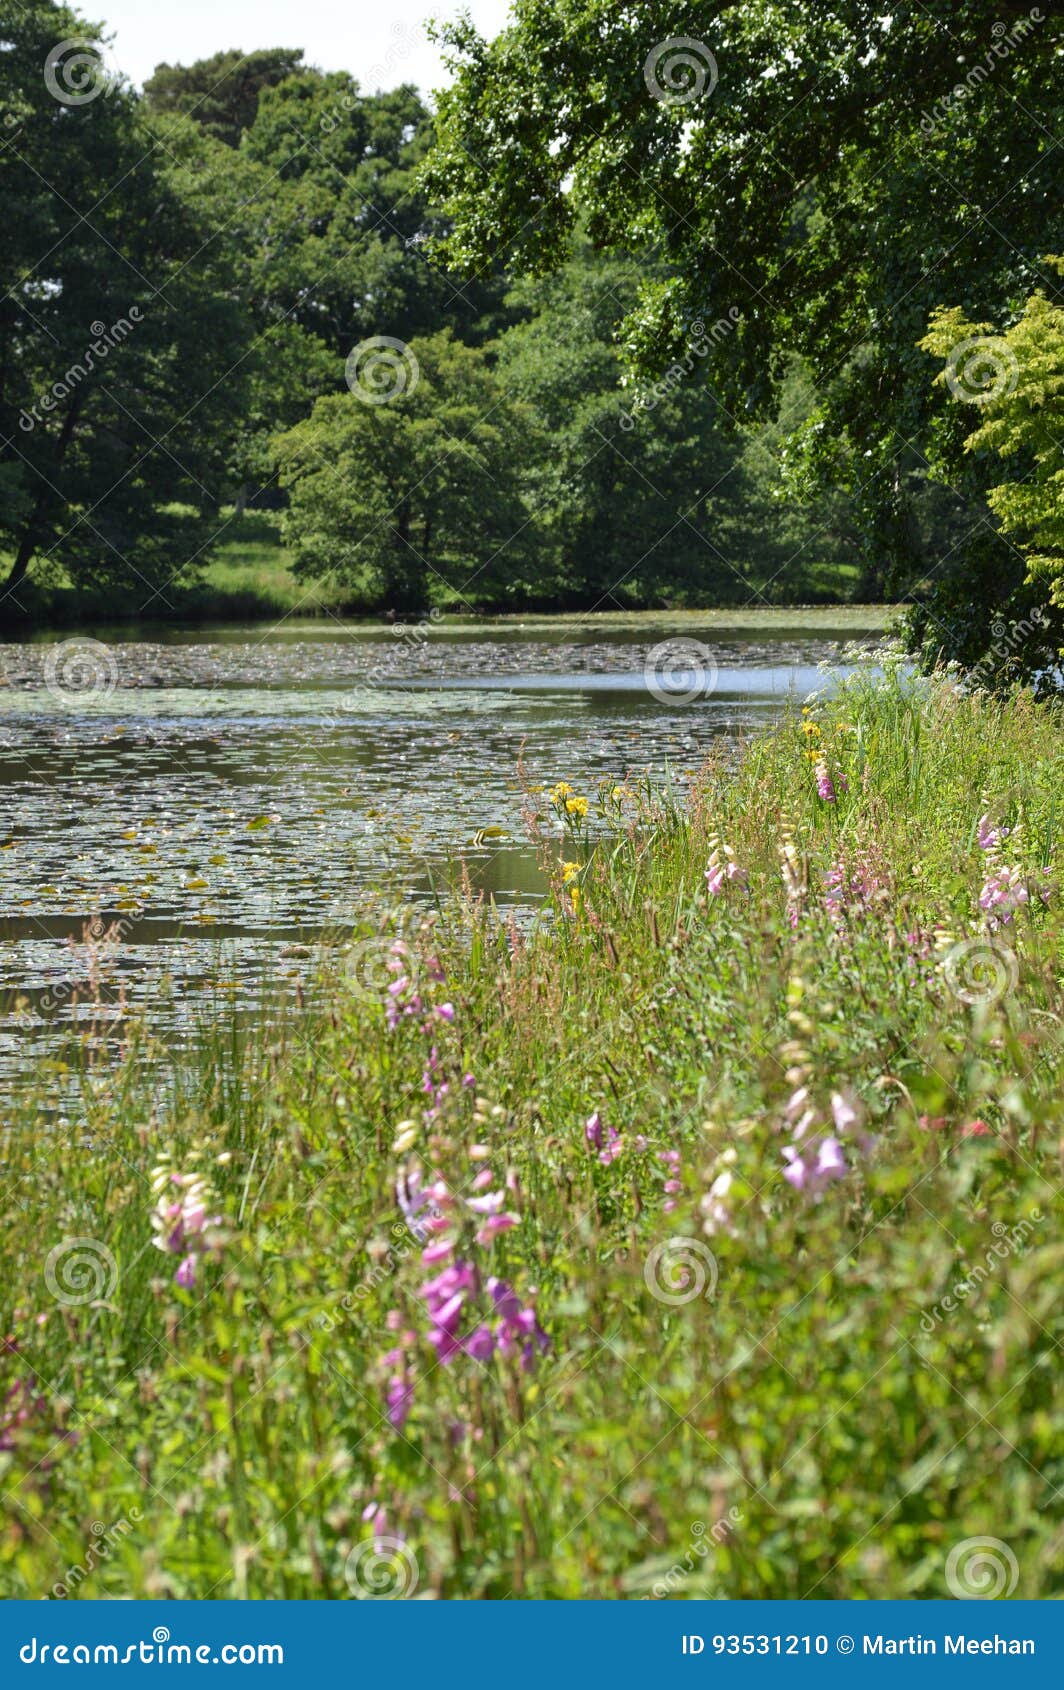 wild flowers on waters edge.